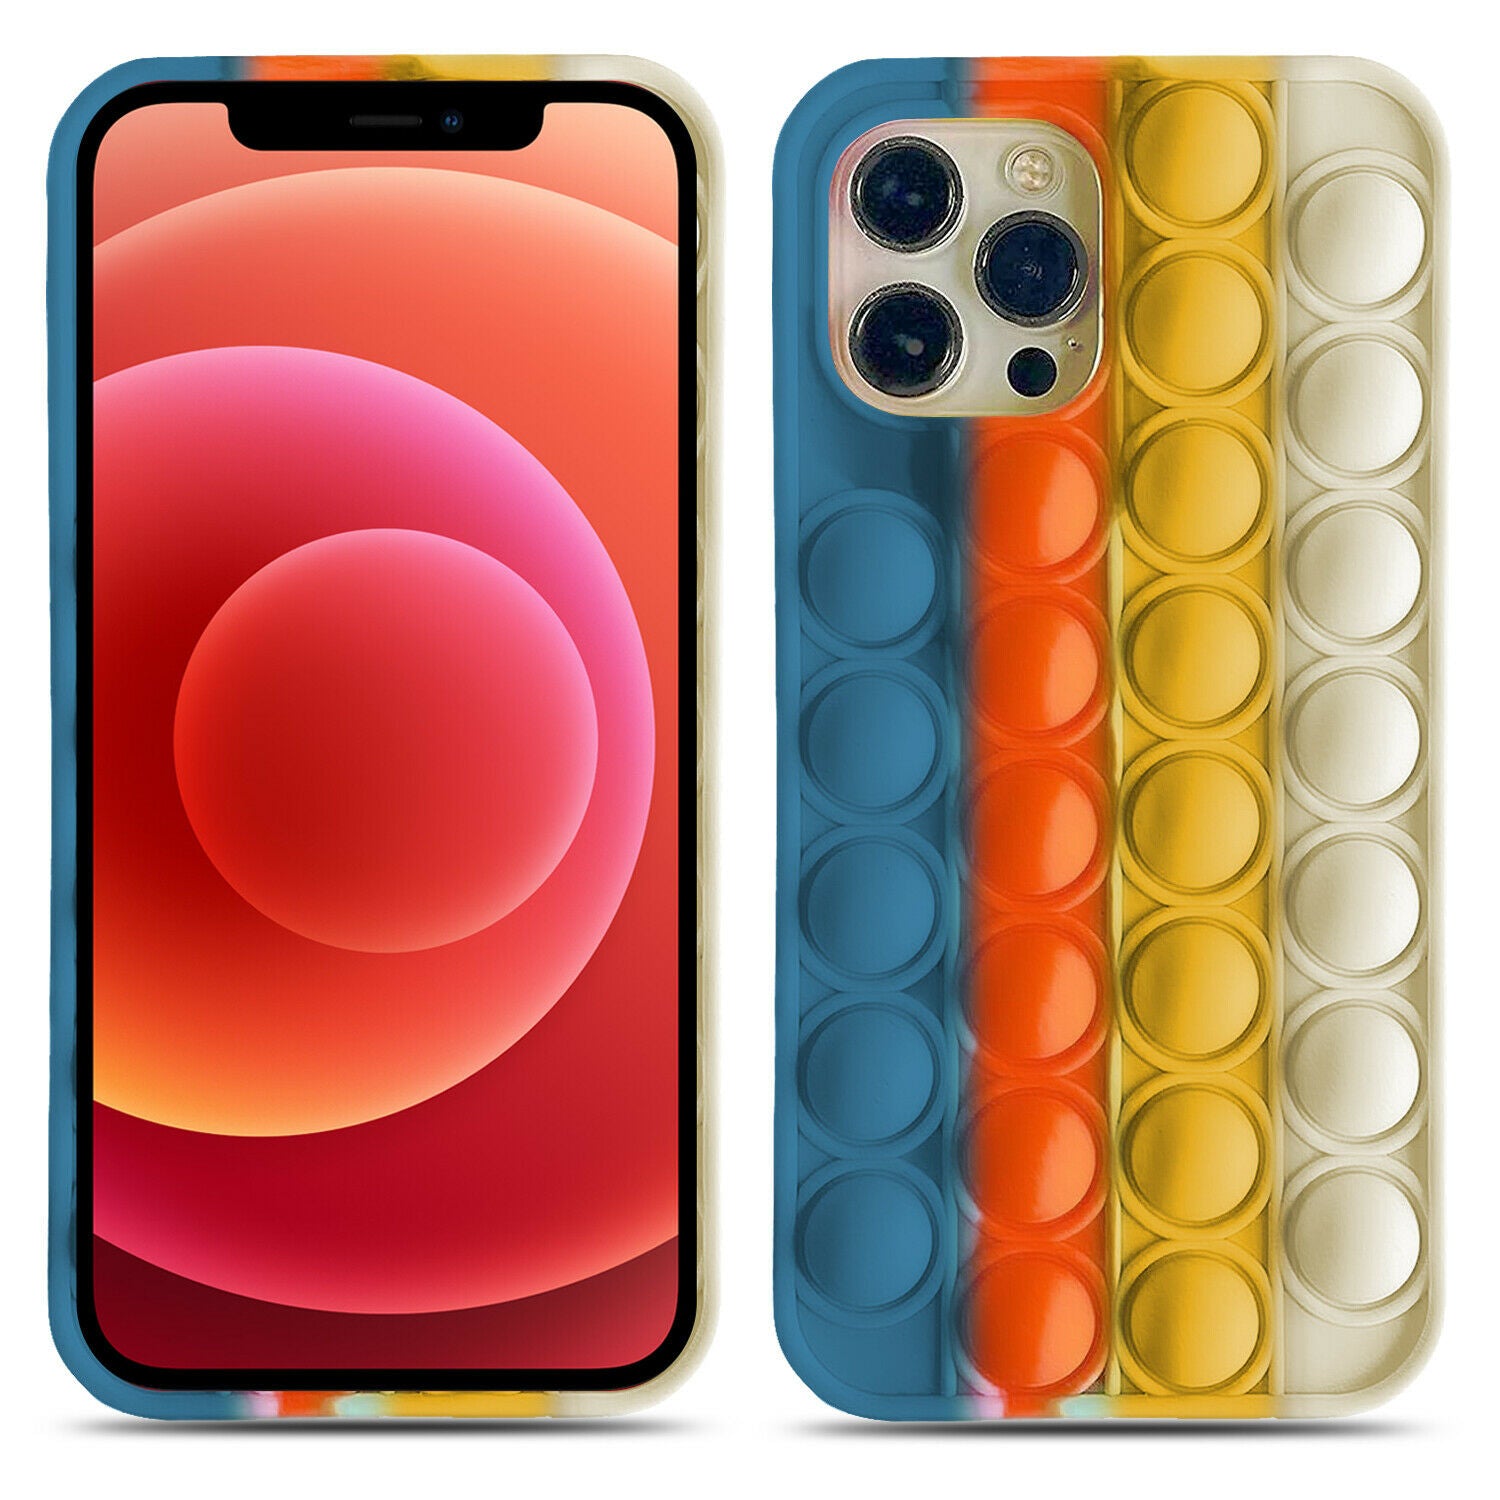 Fidget Push Pop Bubble Toys Phone Case For iPhone 11 PRO MAX